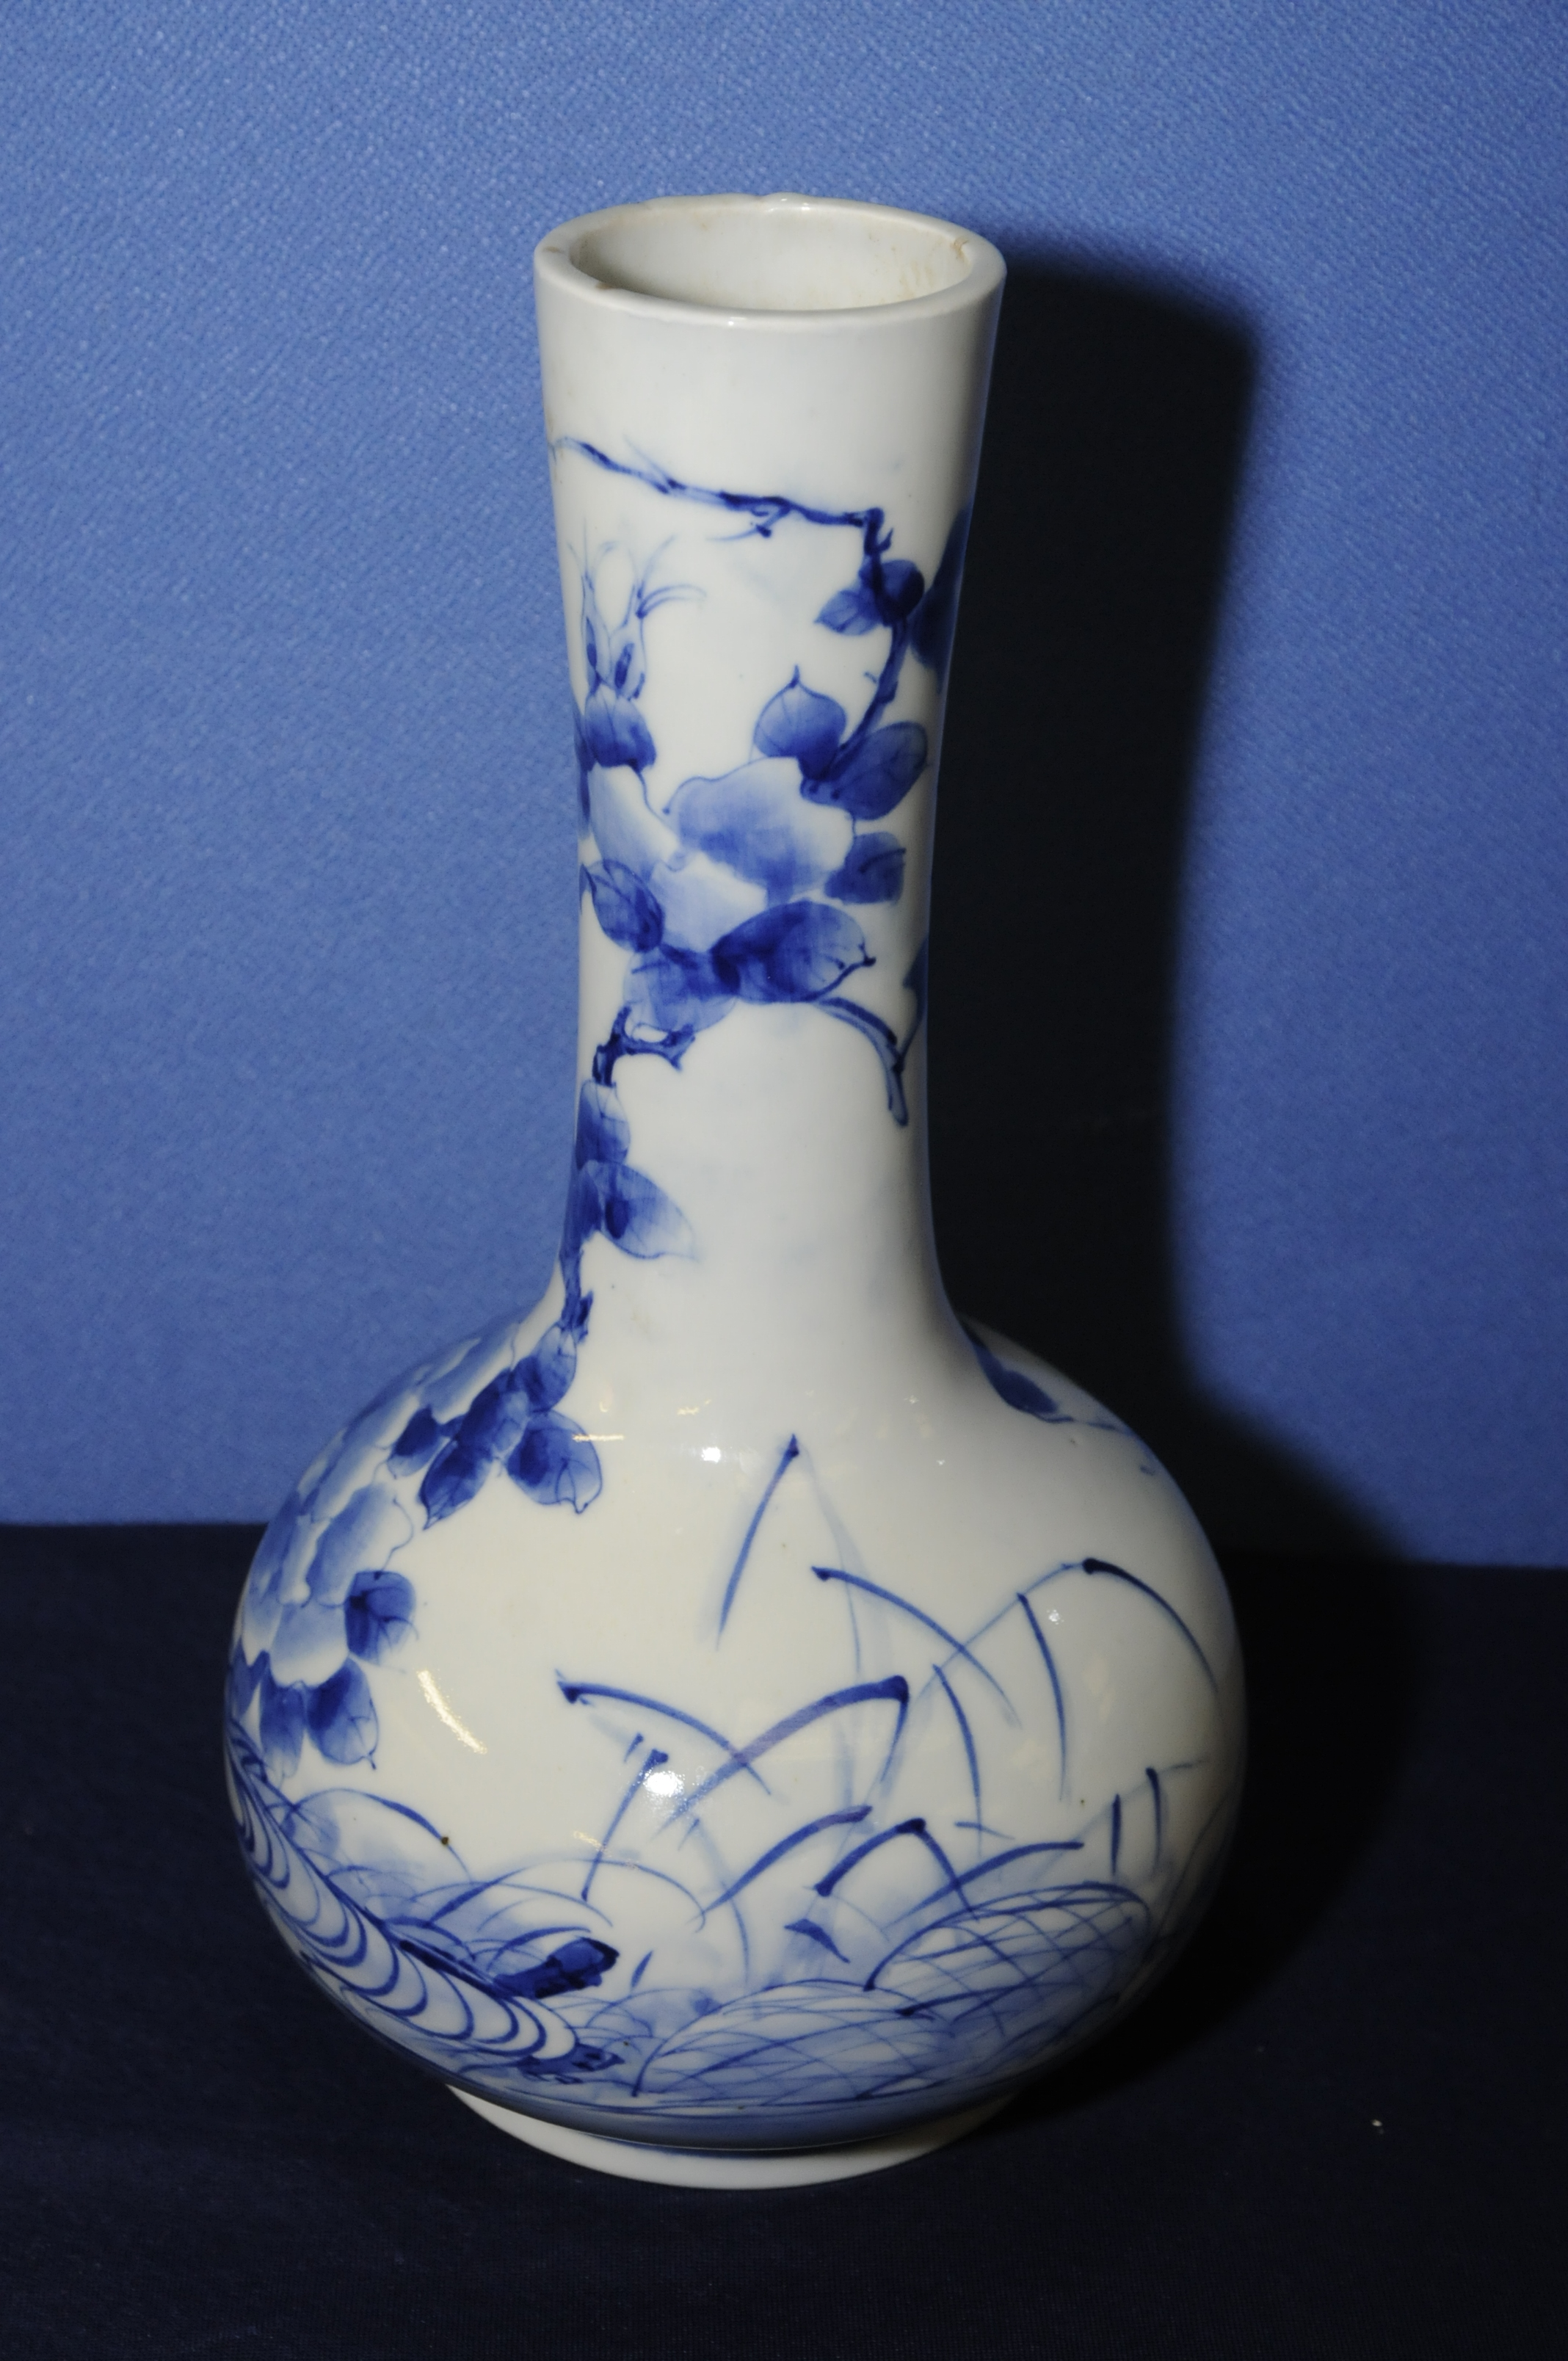 Japanese blue and white bottle neck vase depicting various foliage with nine digit signature panel